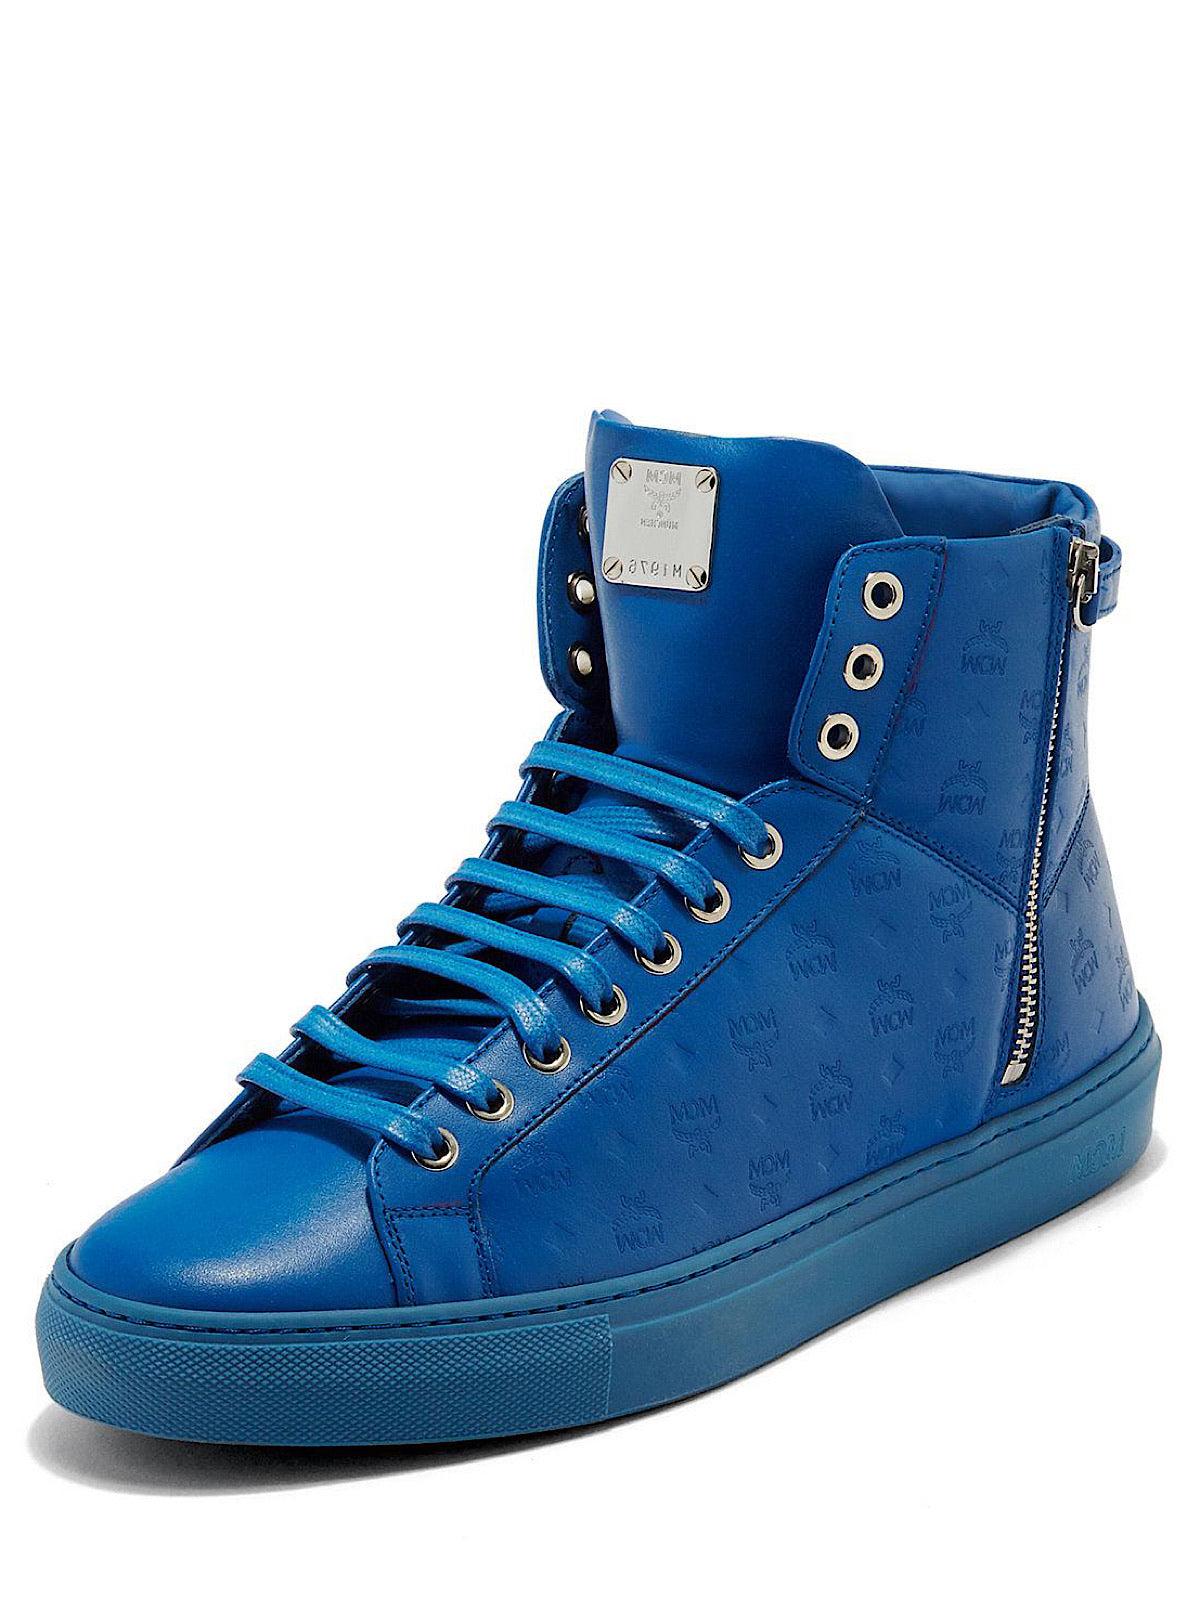 mcm blue shoes